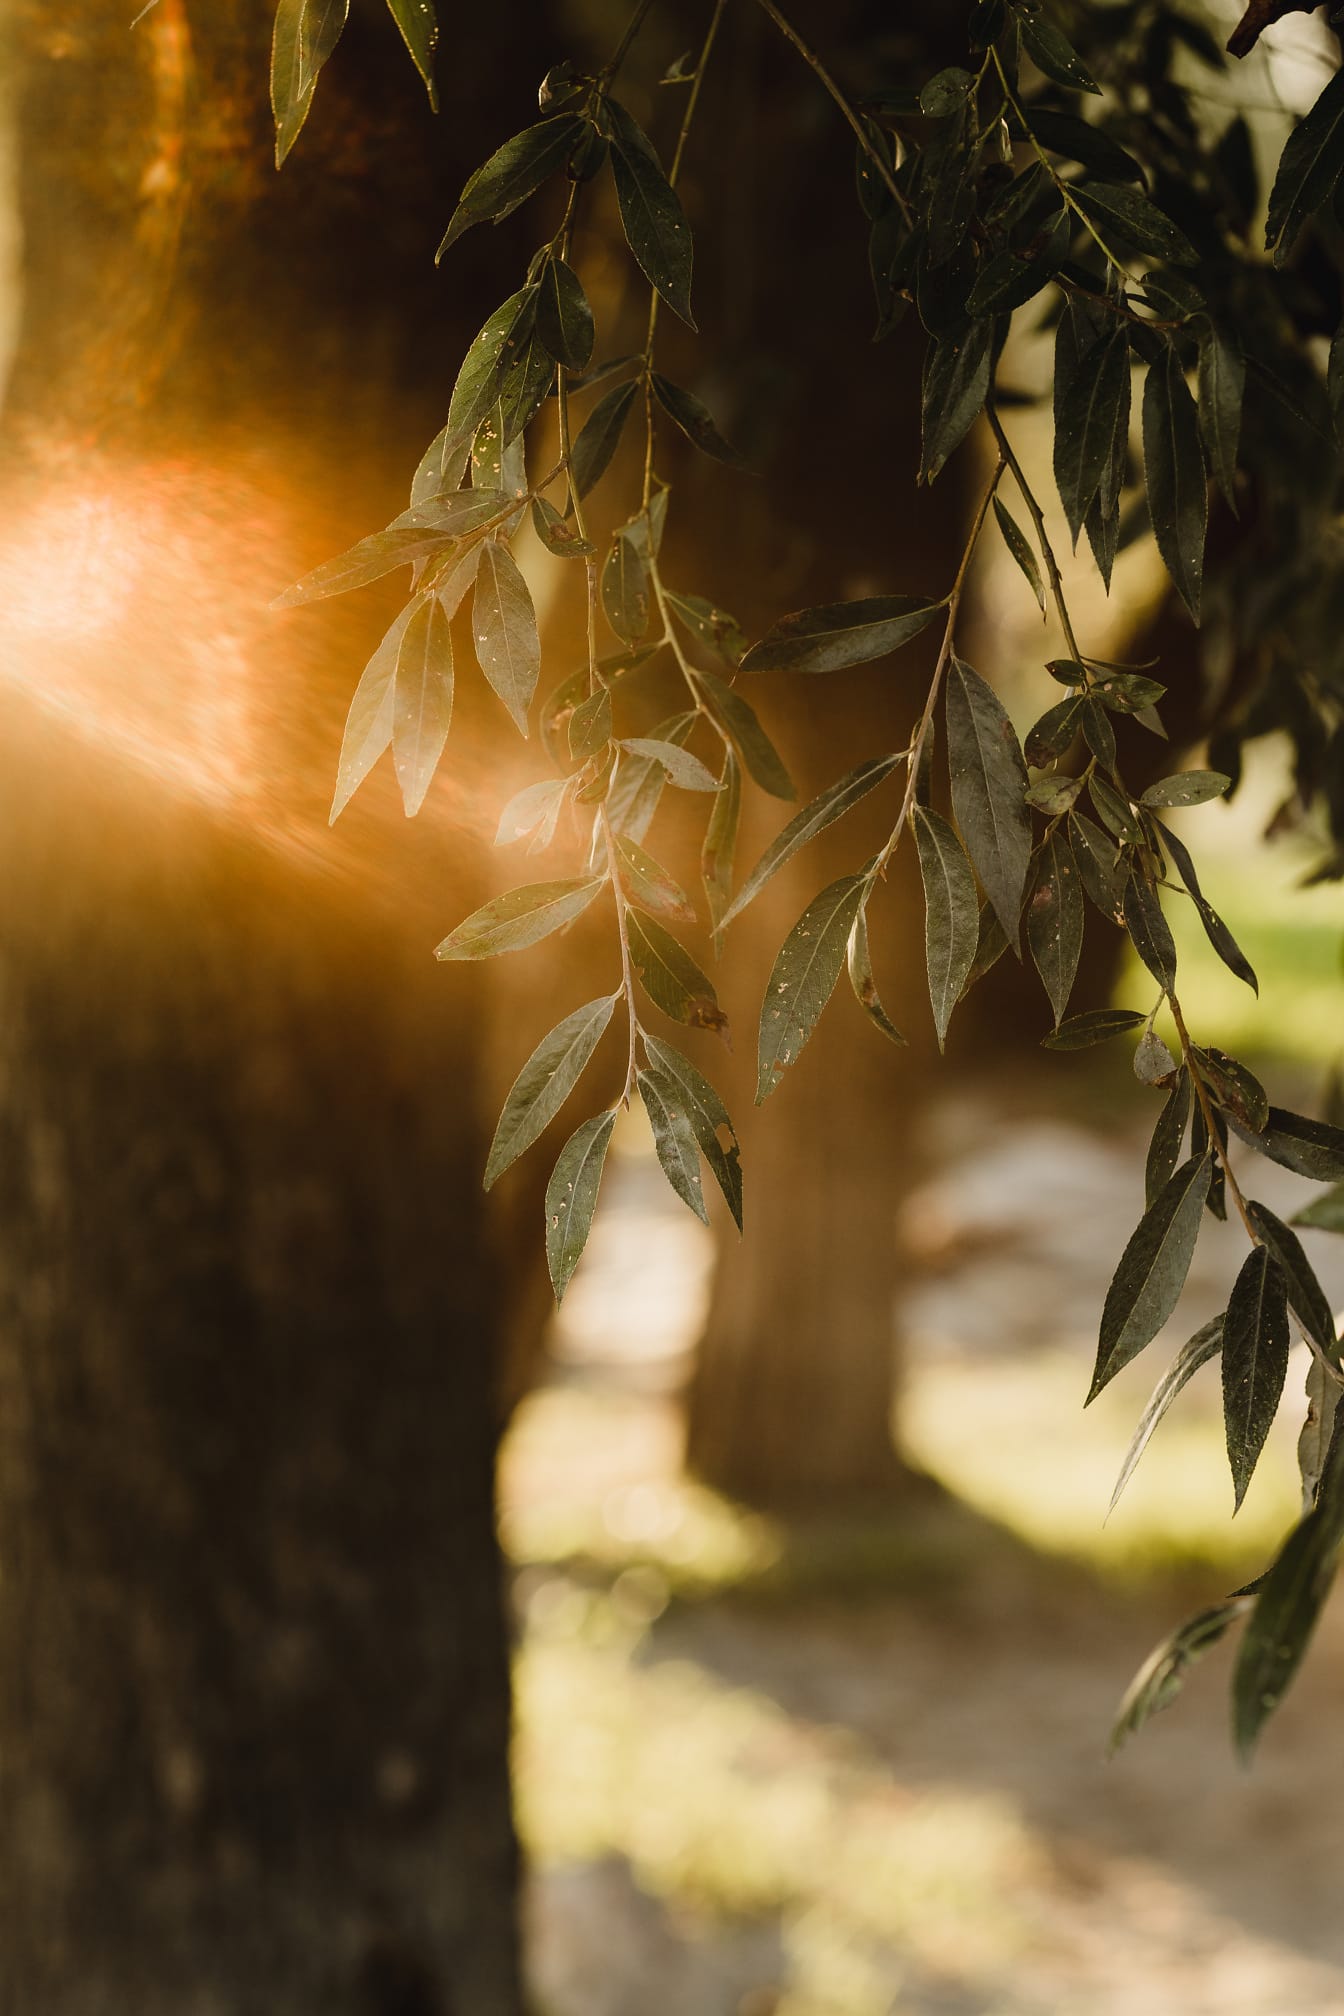 밝은 햇빛 역광이 있는 짙은 녹색 버드나무 잎